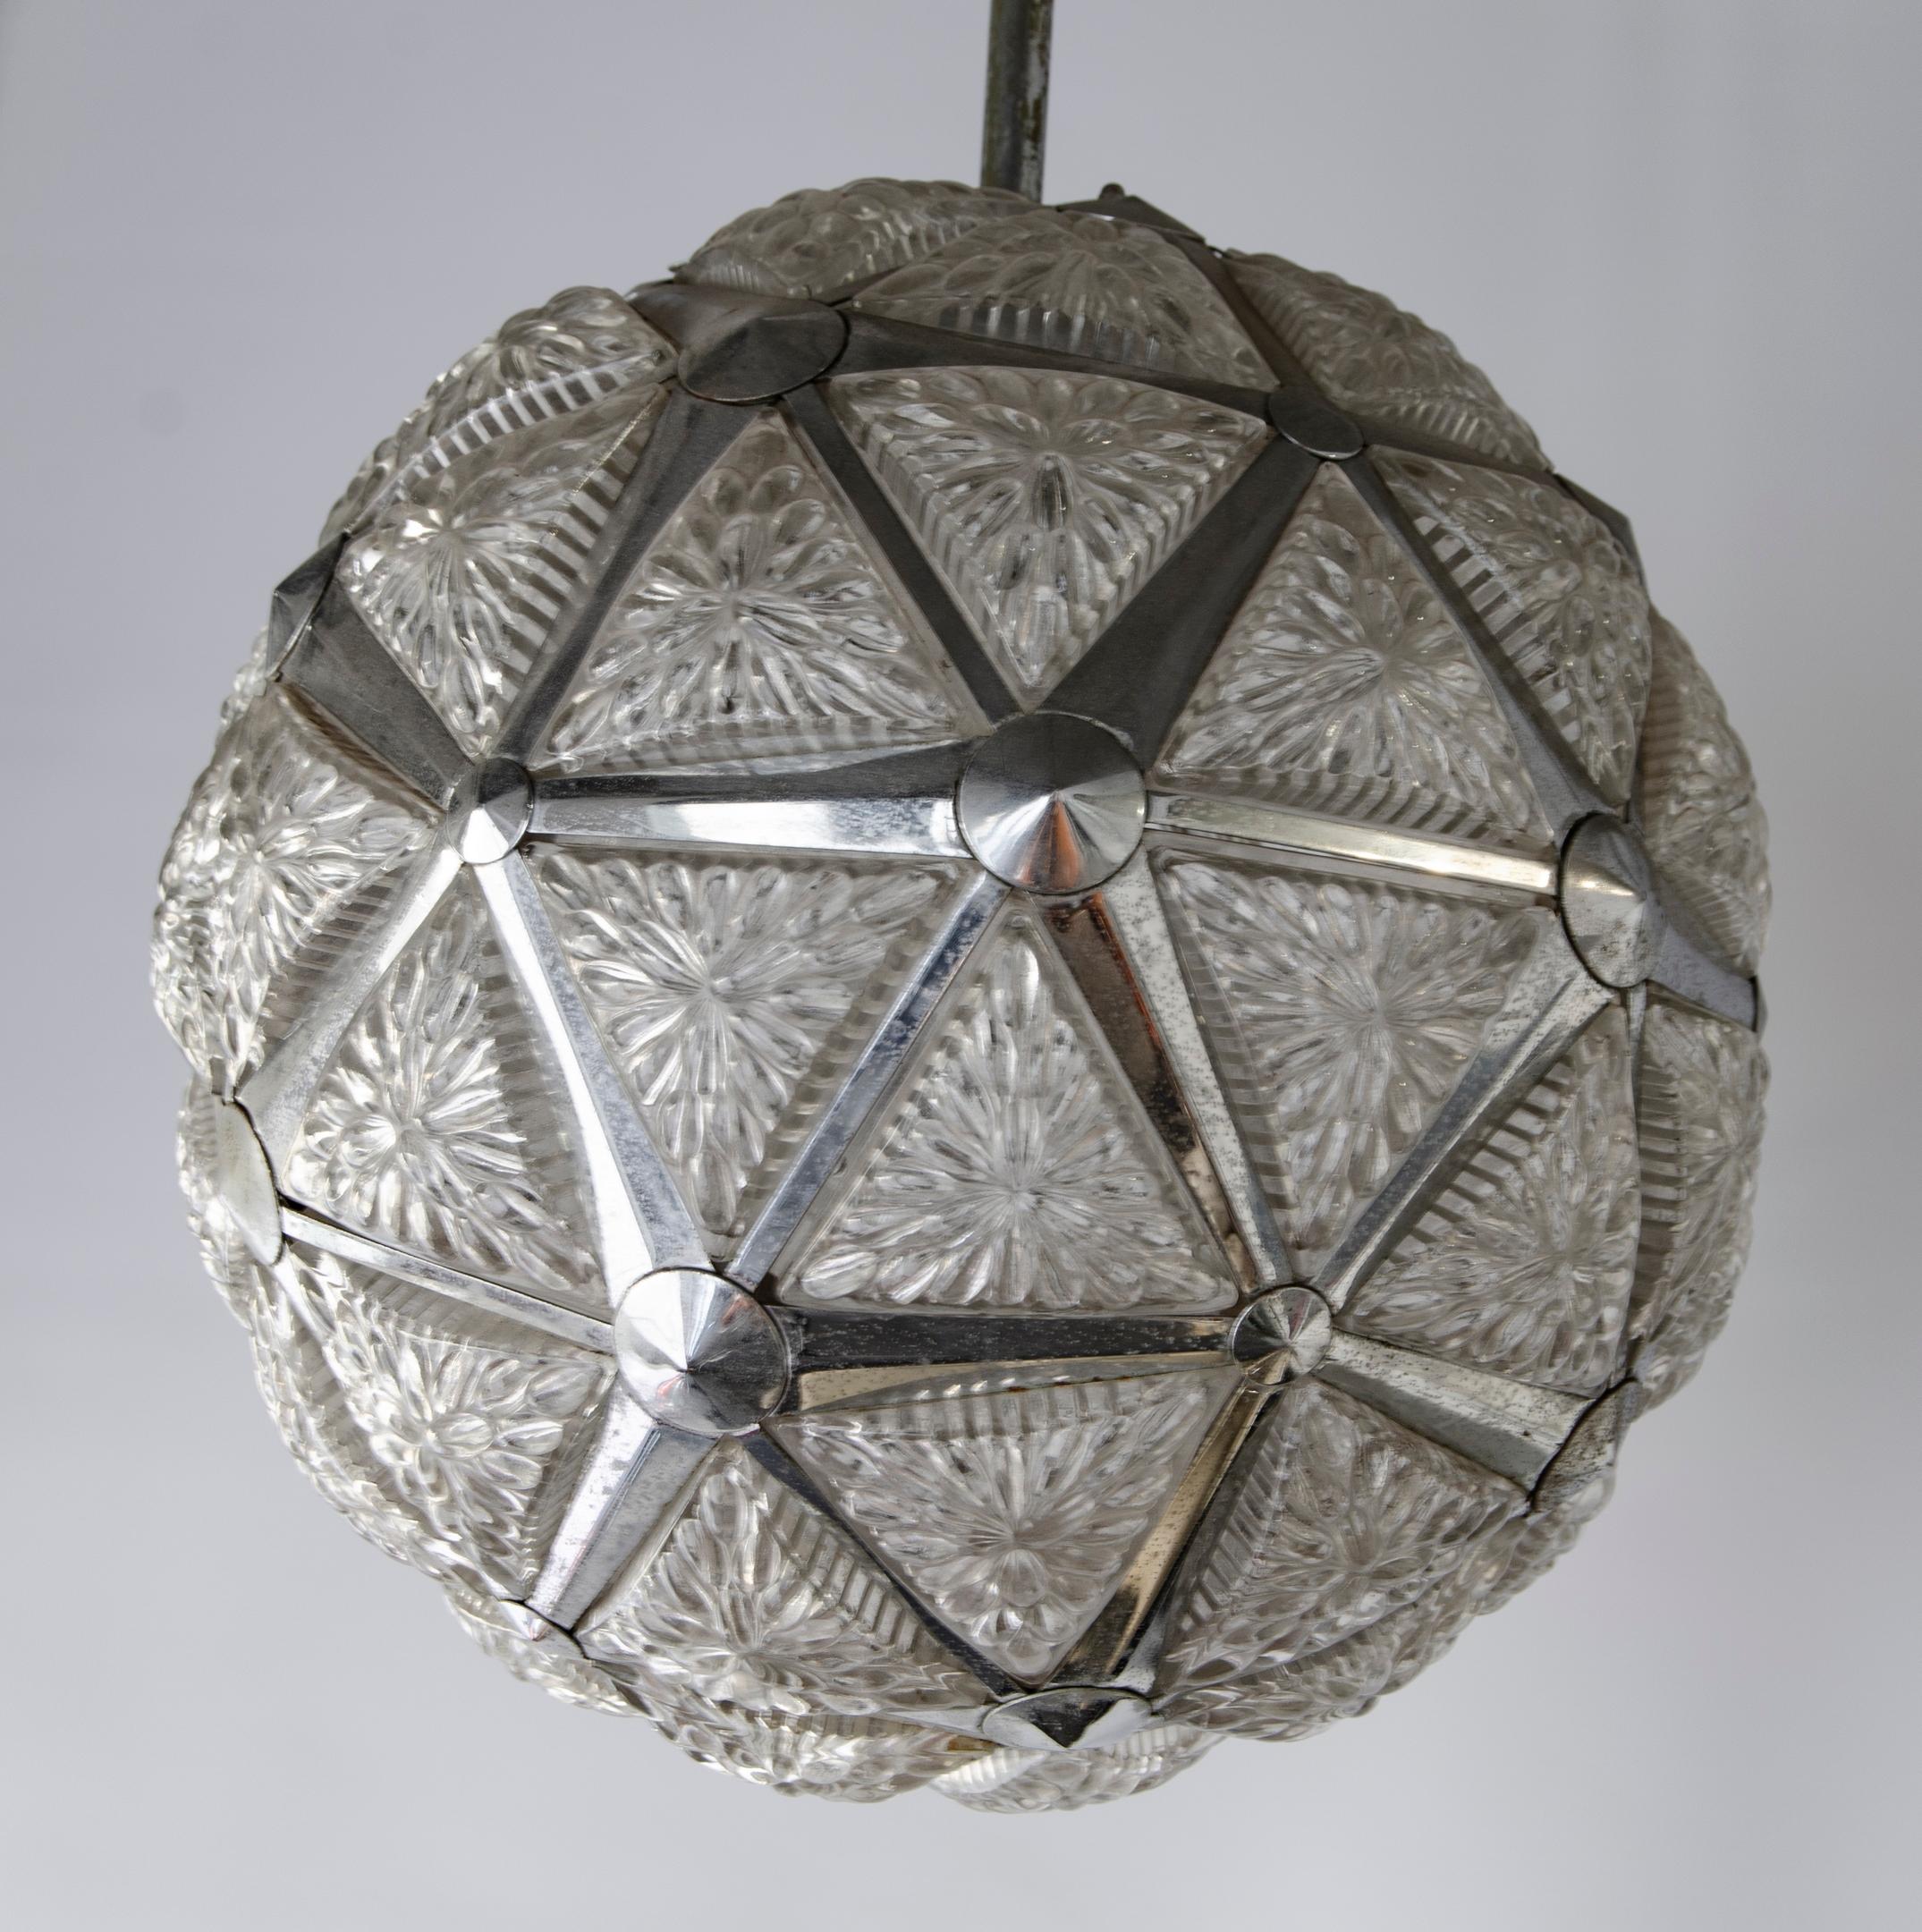 Lampe de plafond des années 60
Pendentif
Sphère en métal et verre
Bronze chromé laiton
Origine États-Unis Circa 1960
Parfait état
Usure naturelle du chrome.